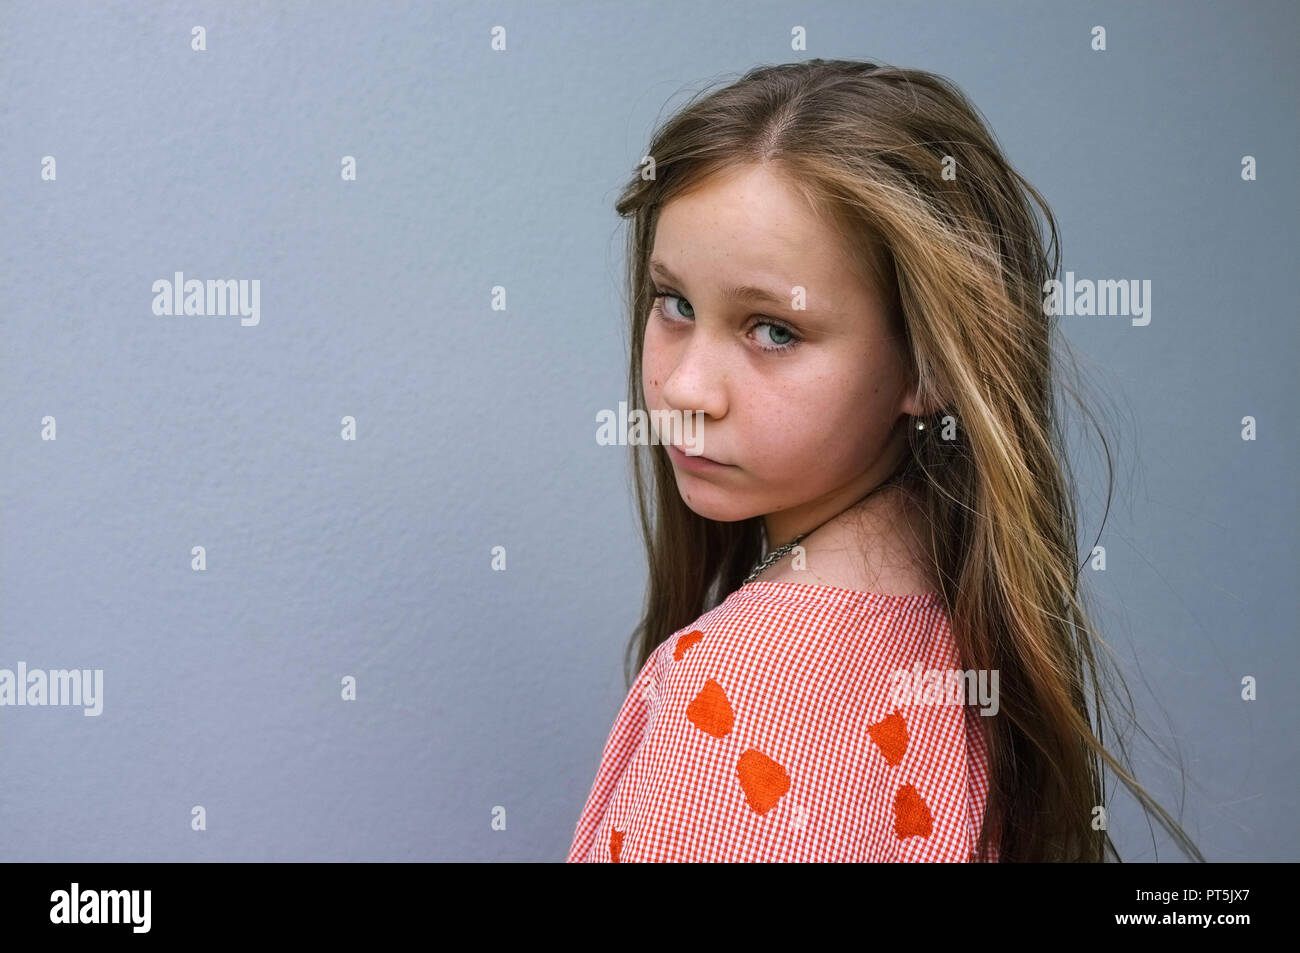 Retrato de una niña pre-adolescentes mirando por encima del hombro, contra una pared gris. Foto de stock